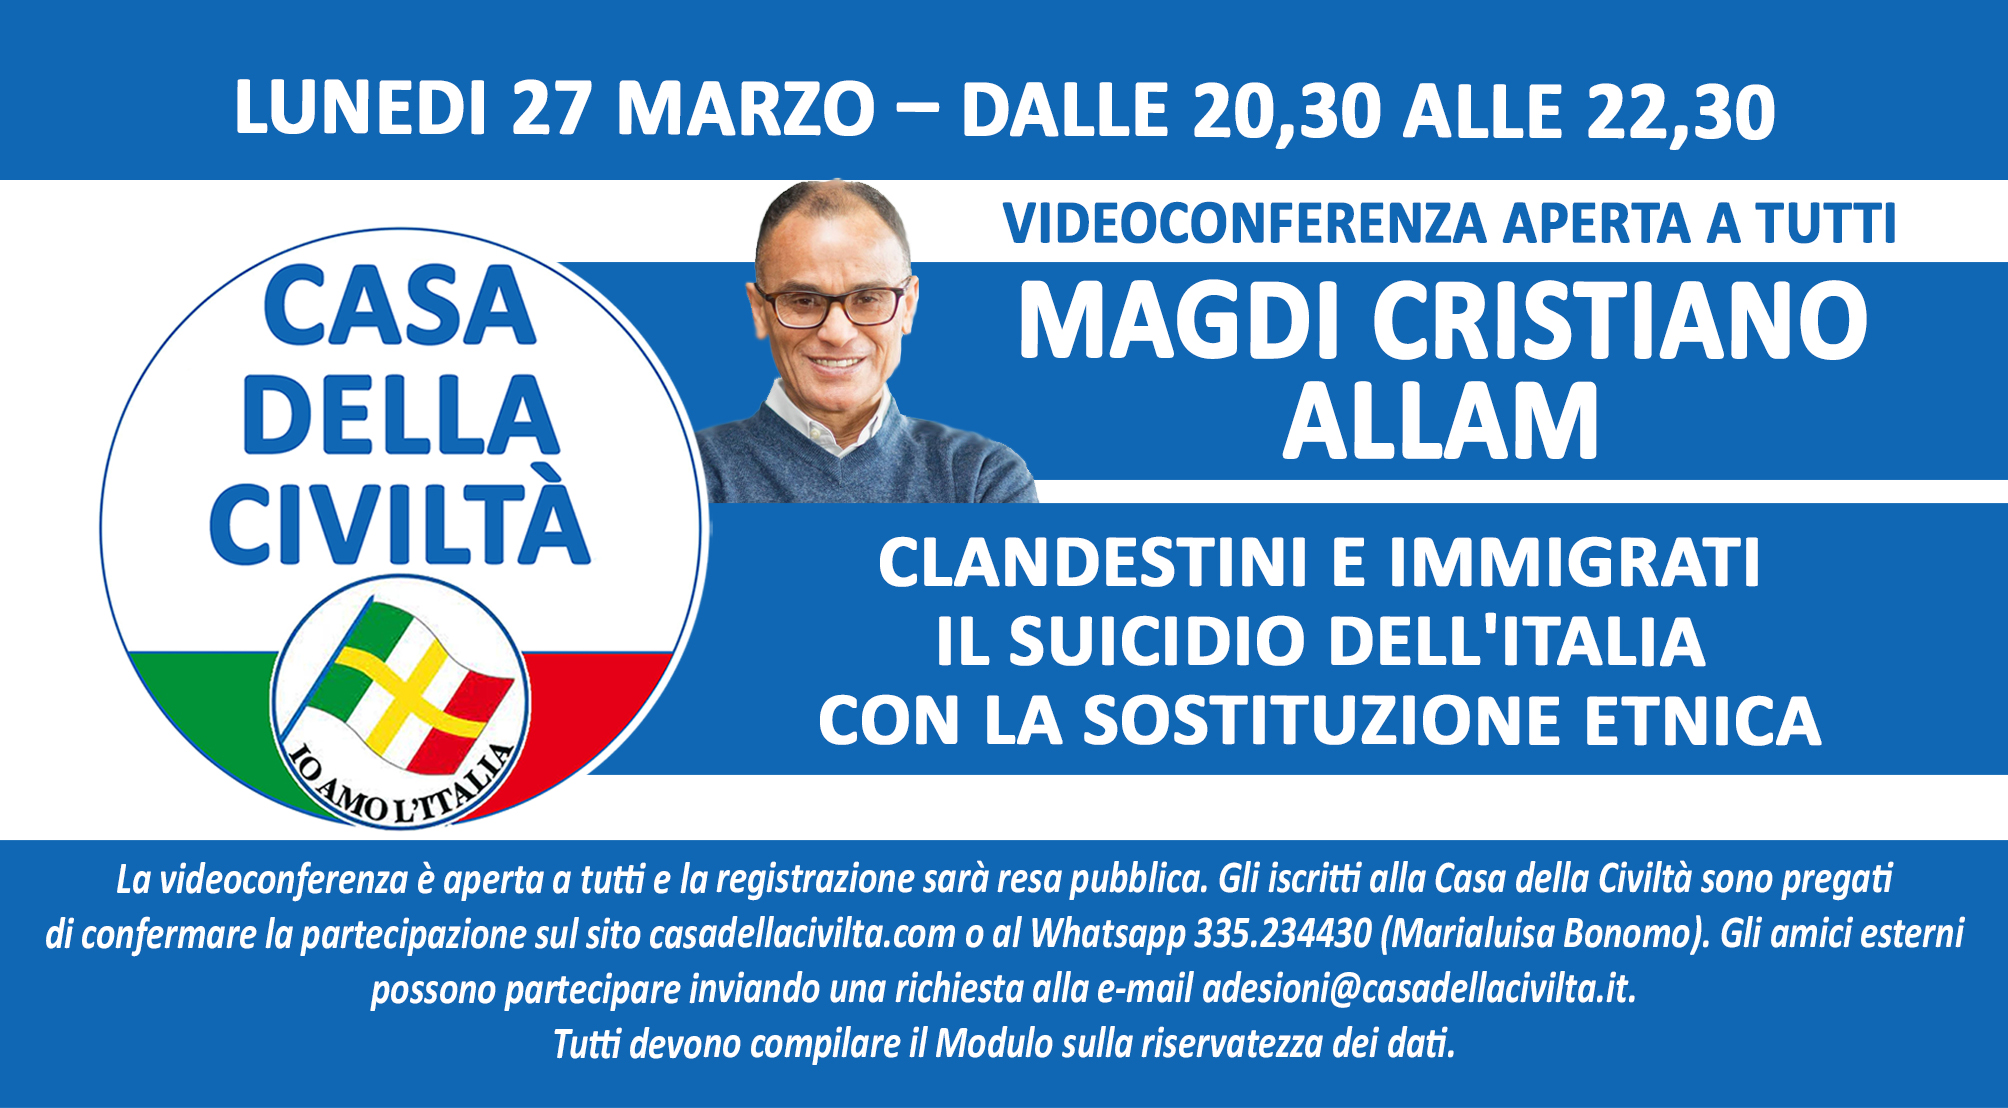 Videoconferenza di MAGDI CRISTIANO ALLAM “Clandestini e immigrati. Il suicidio dell’Italia con la sostituzione etnica” (Lunedì 27 marzo, ore 20,30)